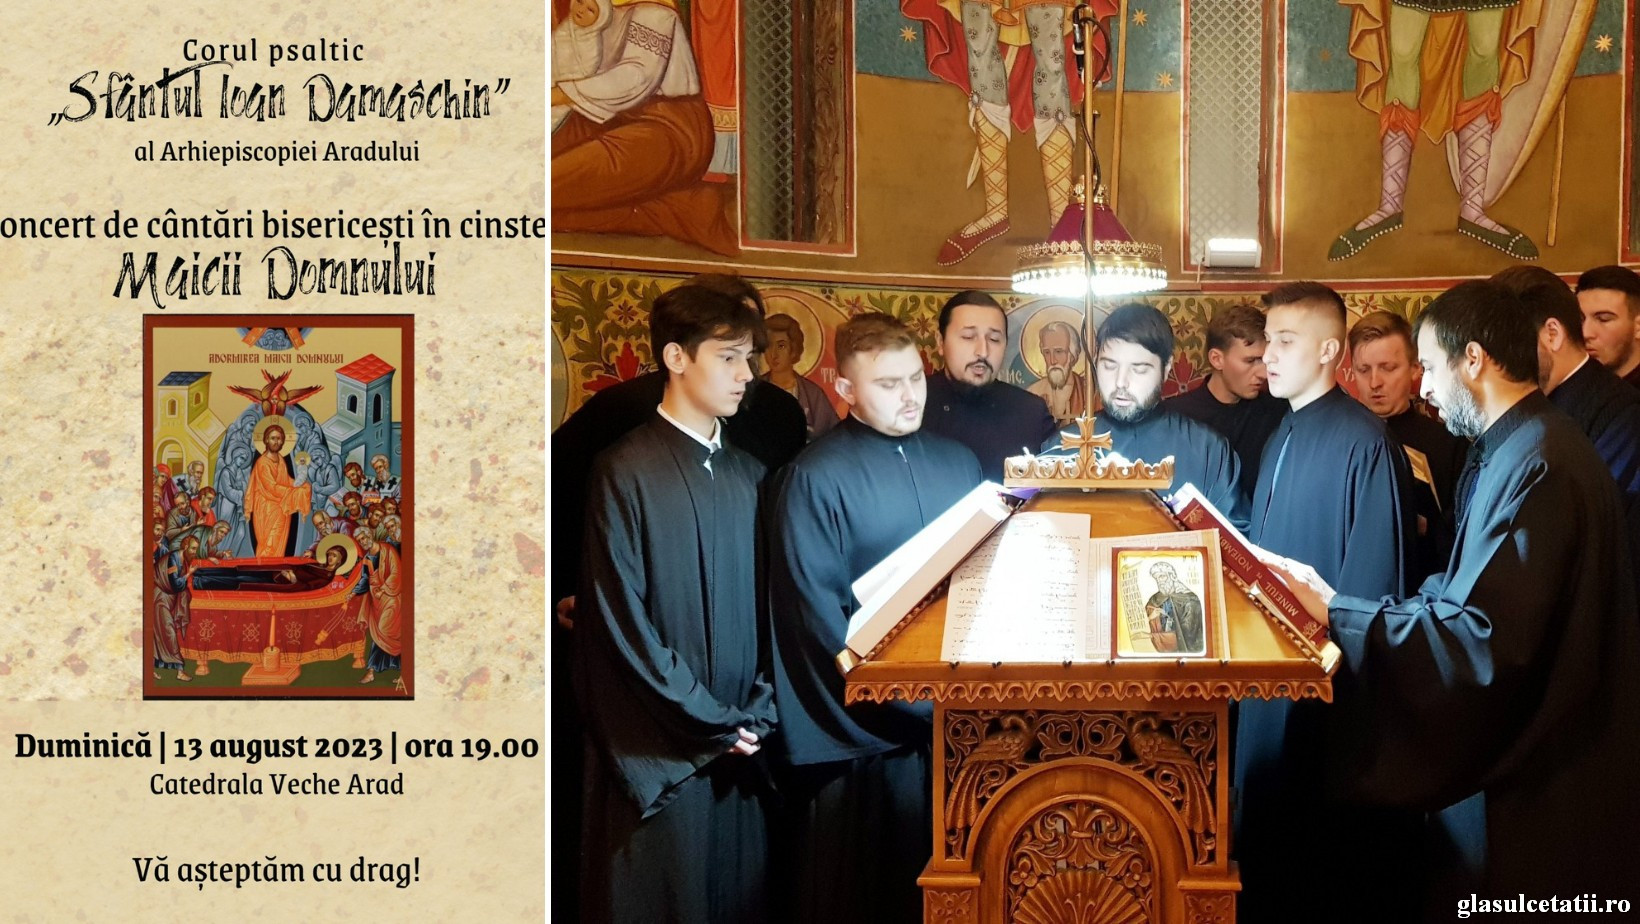 Invitație de și pentru suflet! Corul psaltic Sf. Ioan Damaschin va susține un Concert de cântări bisericești în cinstea Maicii Domnului